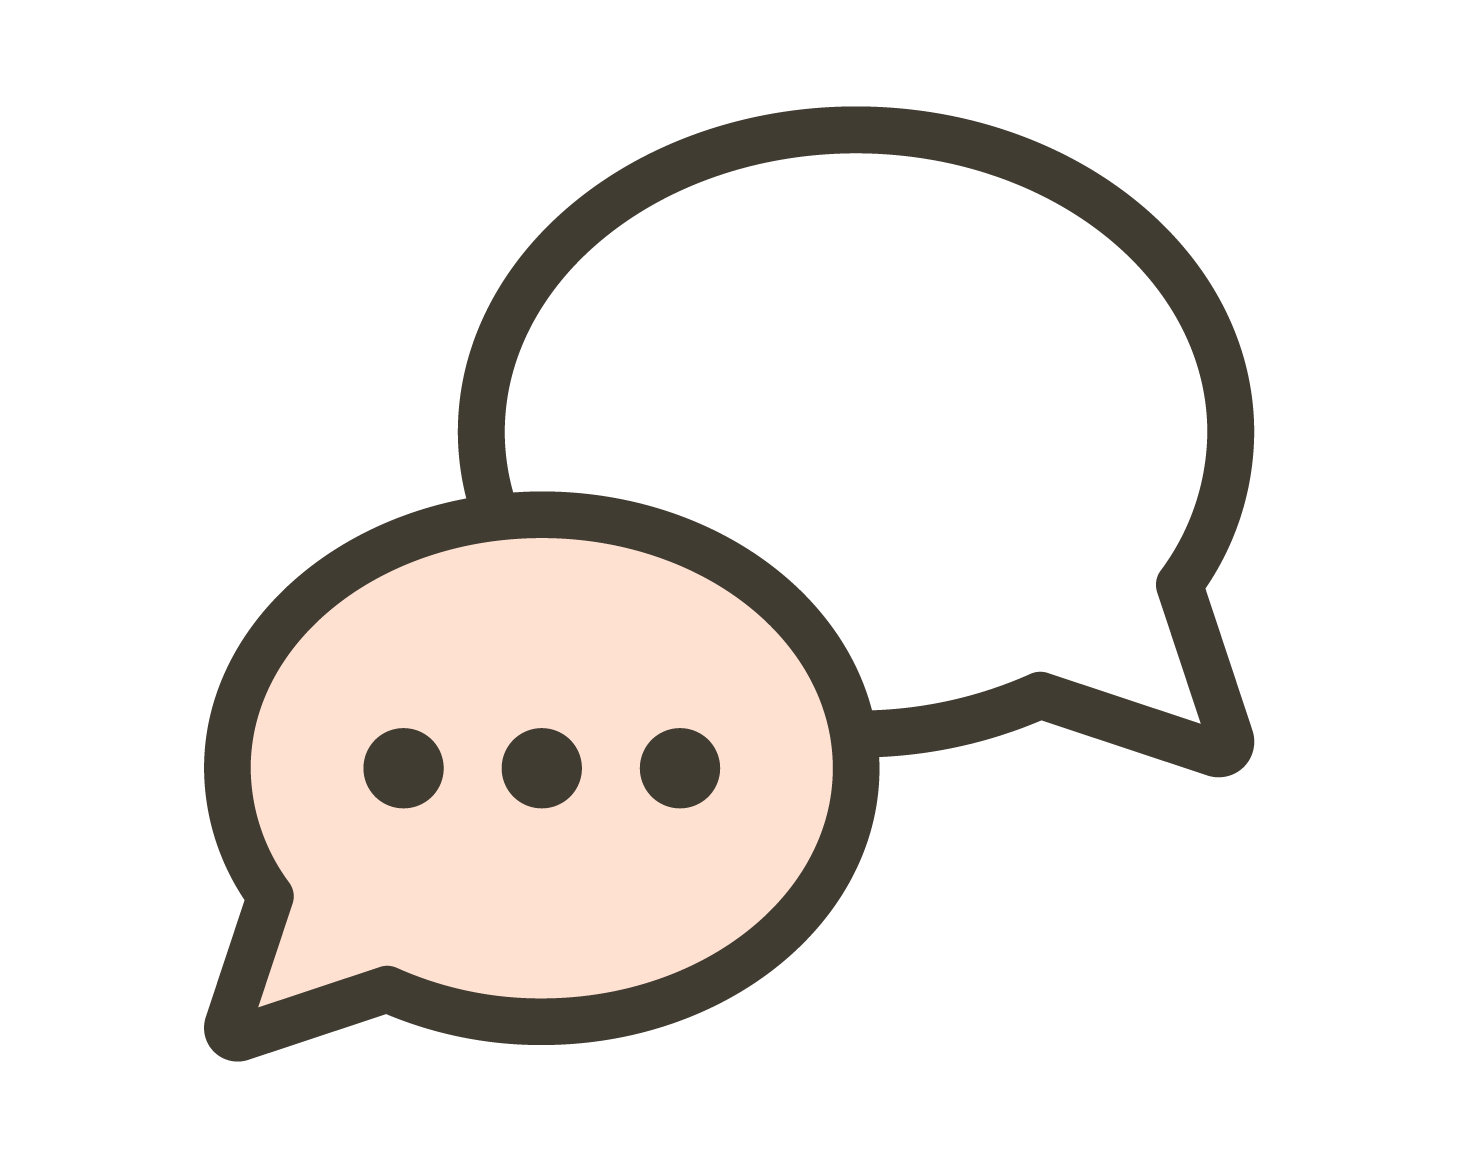 Icono de chat con el equipo de redsauce sobre pruebas funcionales